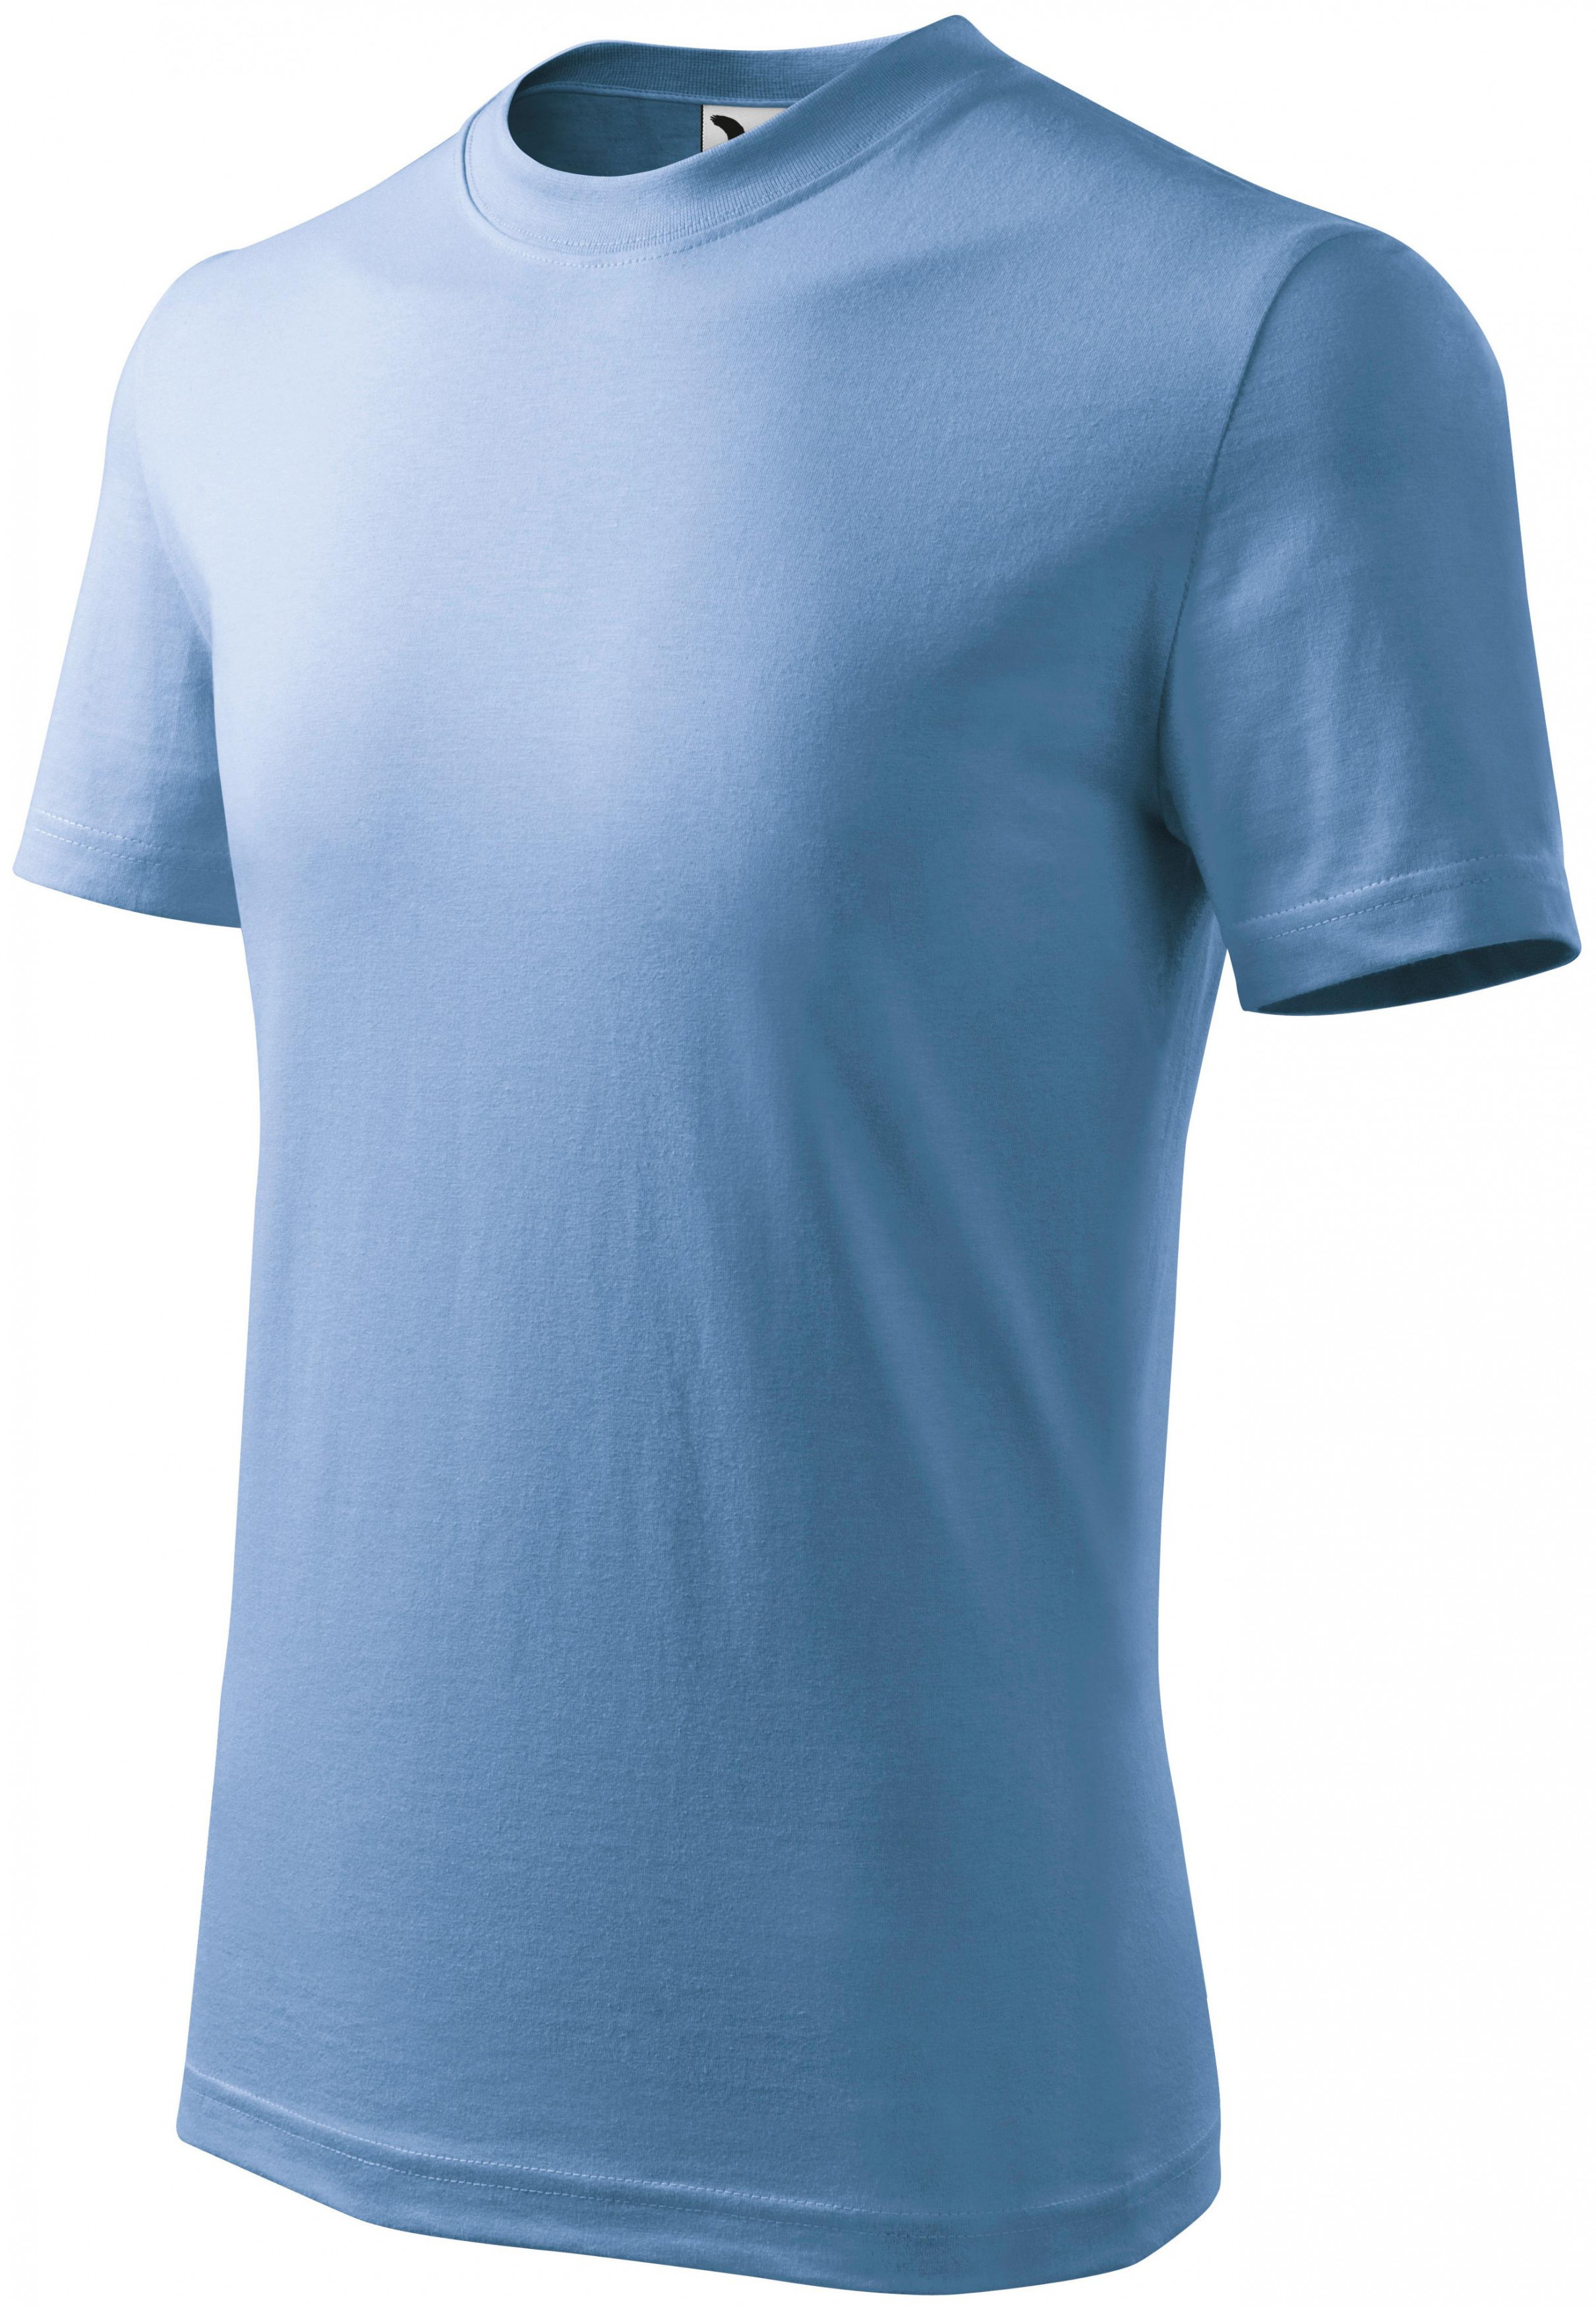 Detské tričko jednoduché, nebeská modrá, 134cm / 8rokov